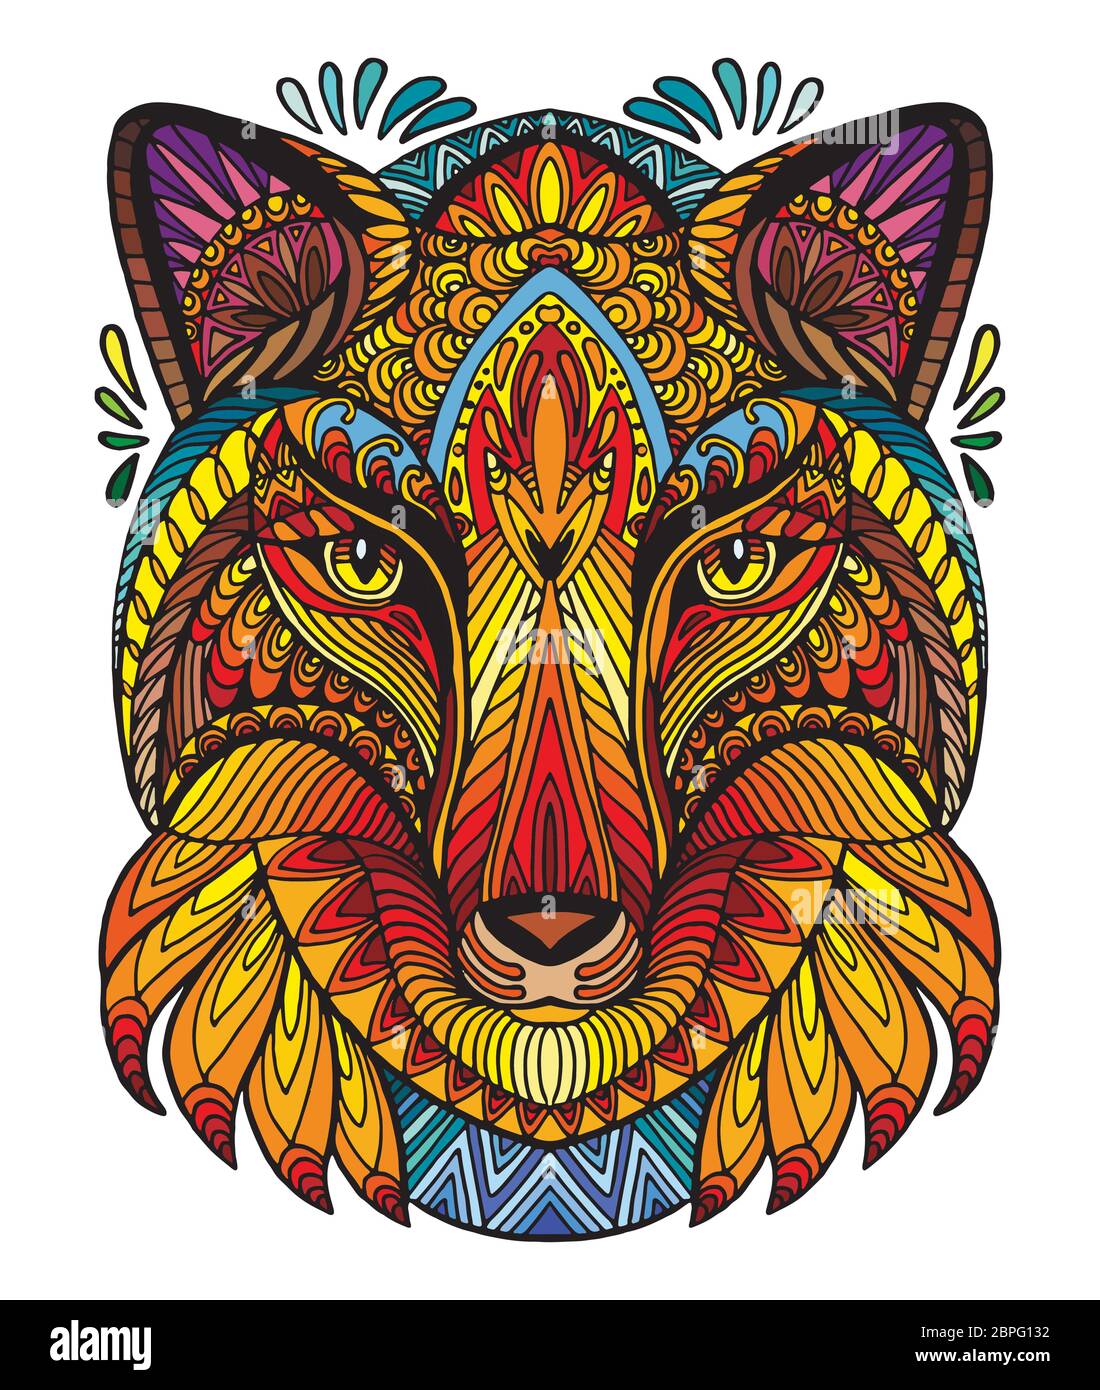 Vettore decorativo doodle testa ornamentale di volpe. Vettore astratto colorato illustrazione della testa di volpe isolato su sfondo bianco. Illustrazione del magazzino per Illustrazione Vettoriale